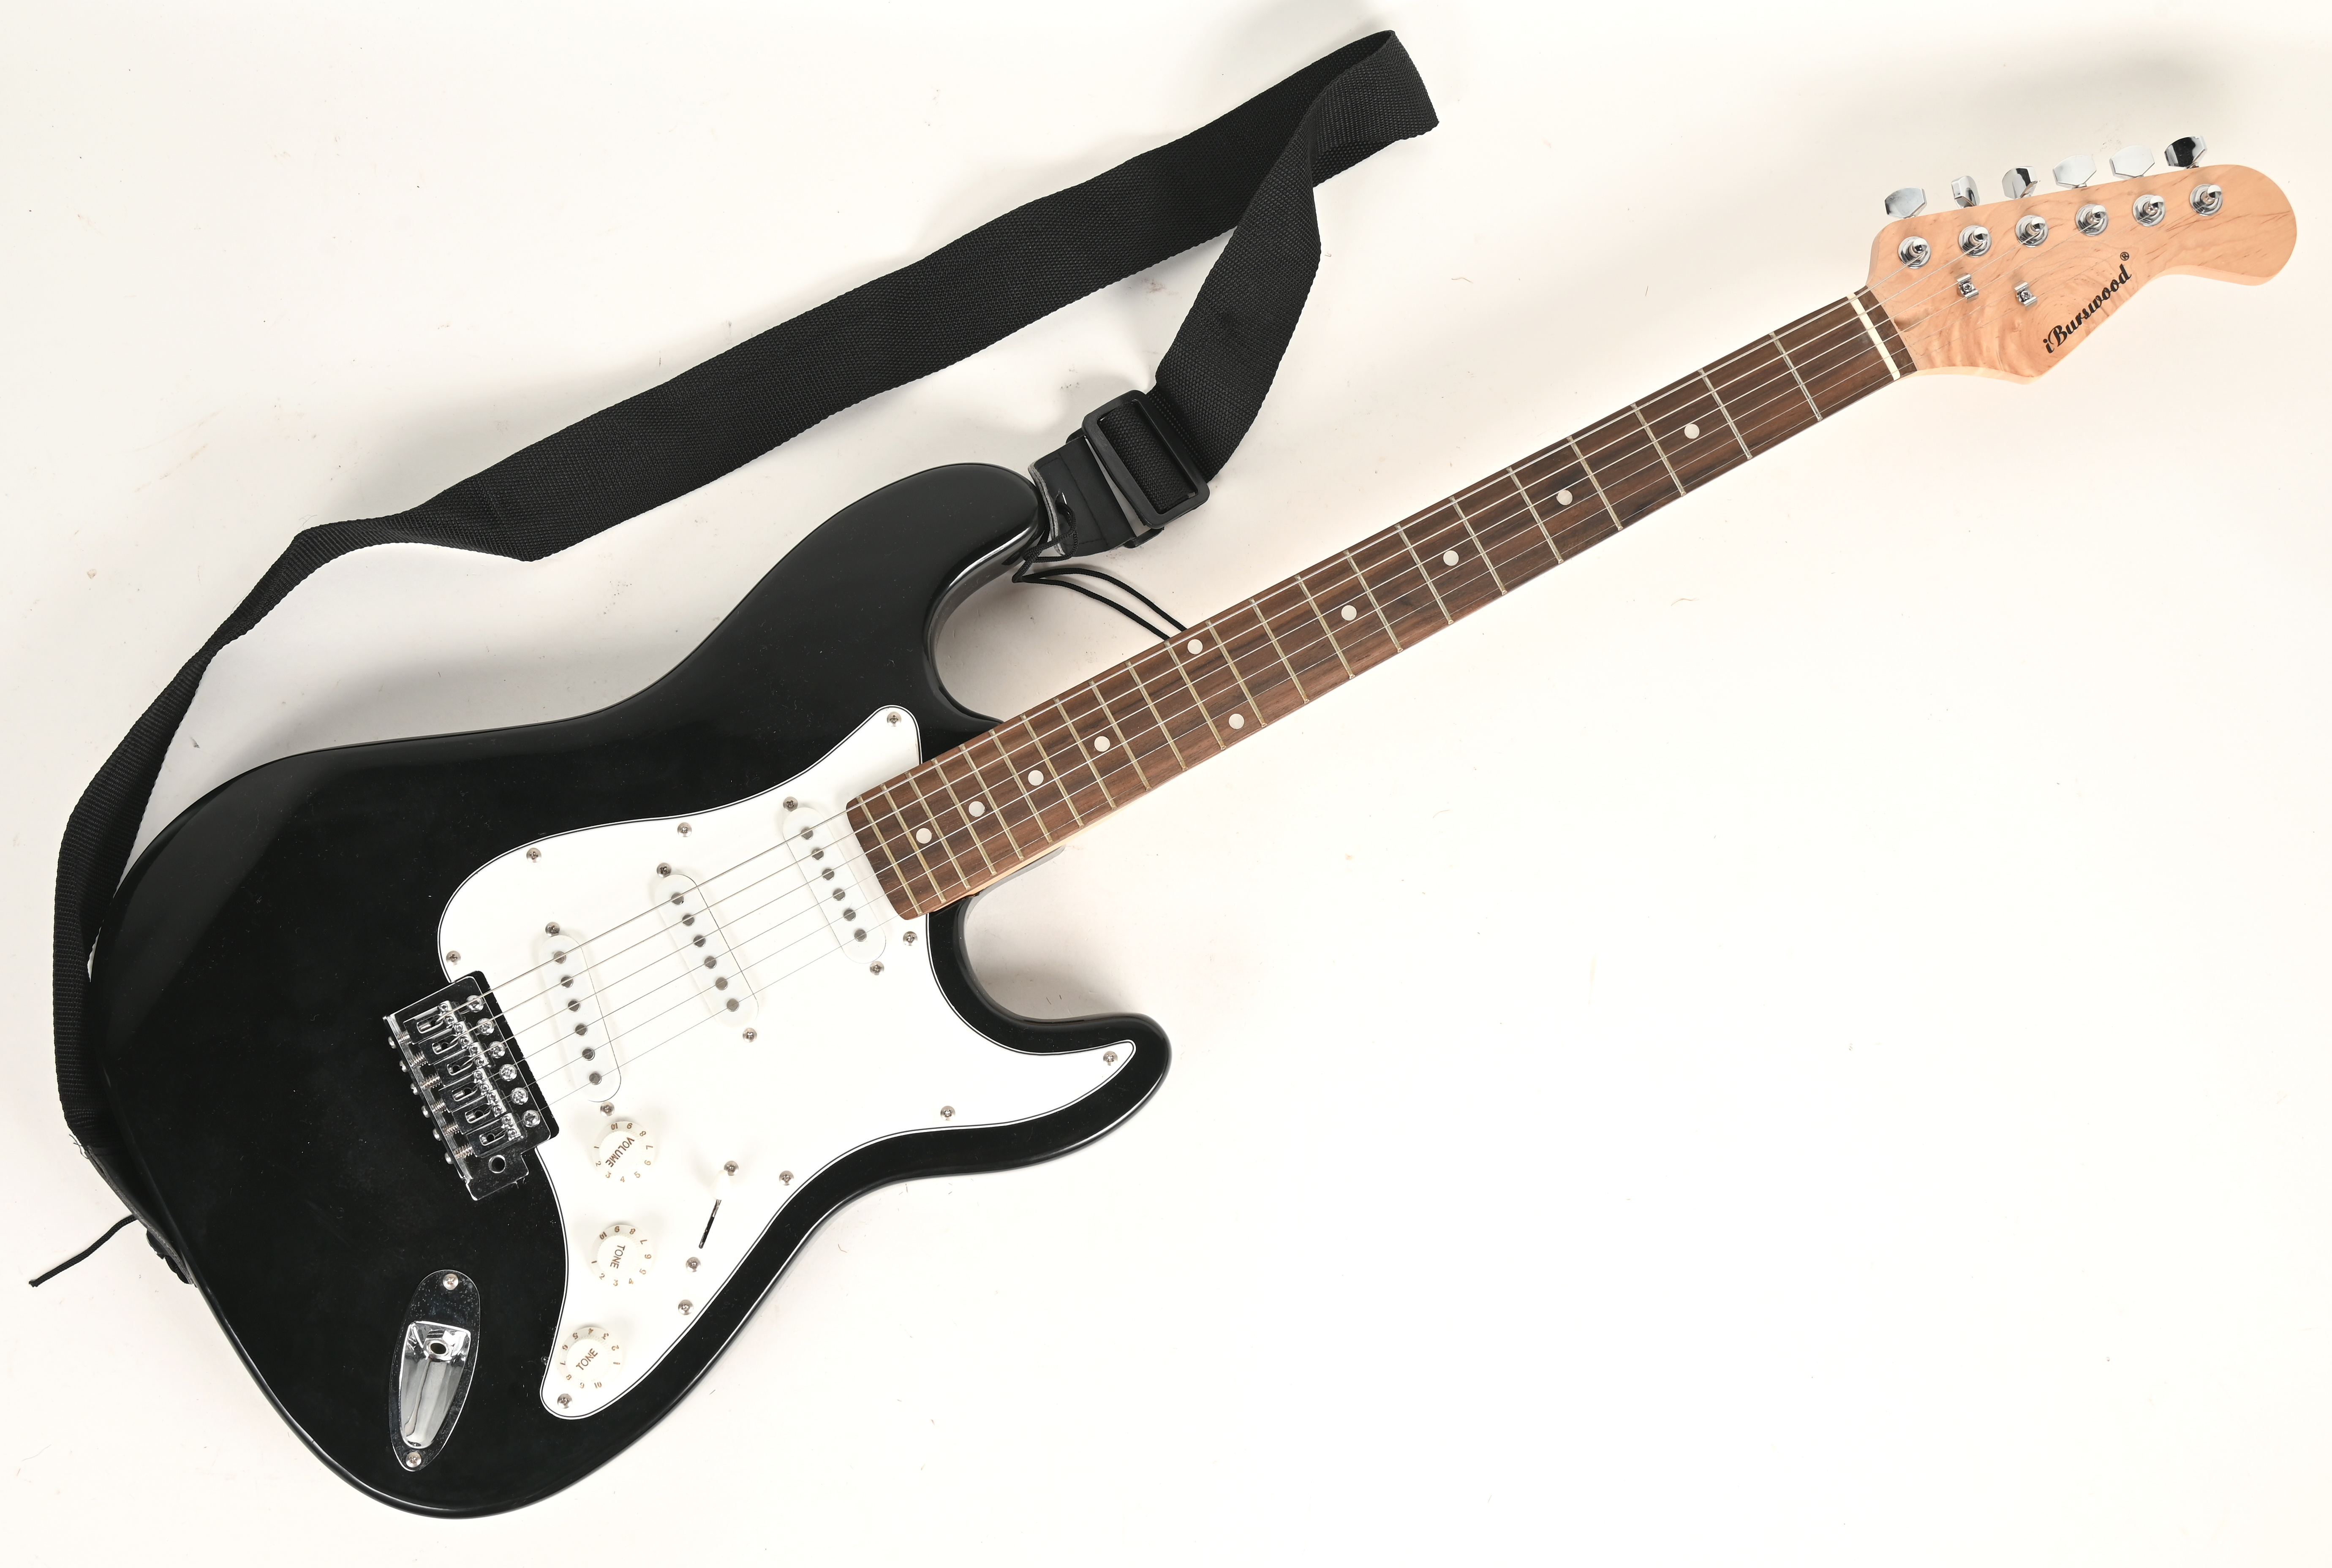 Mount Bank Onbeleefd Punt Een elektrische gitaar met esdoornen nek en kop. Met gitaartas. – Jordaens  N.V. Veilinghuis